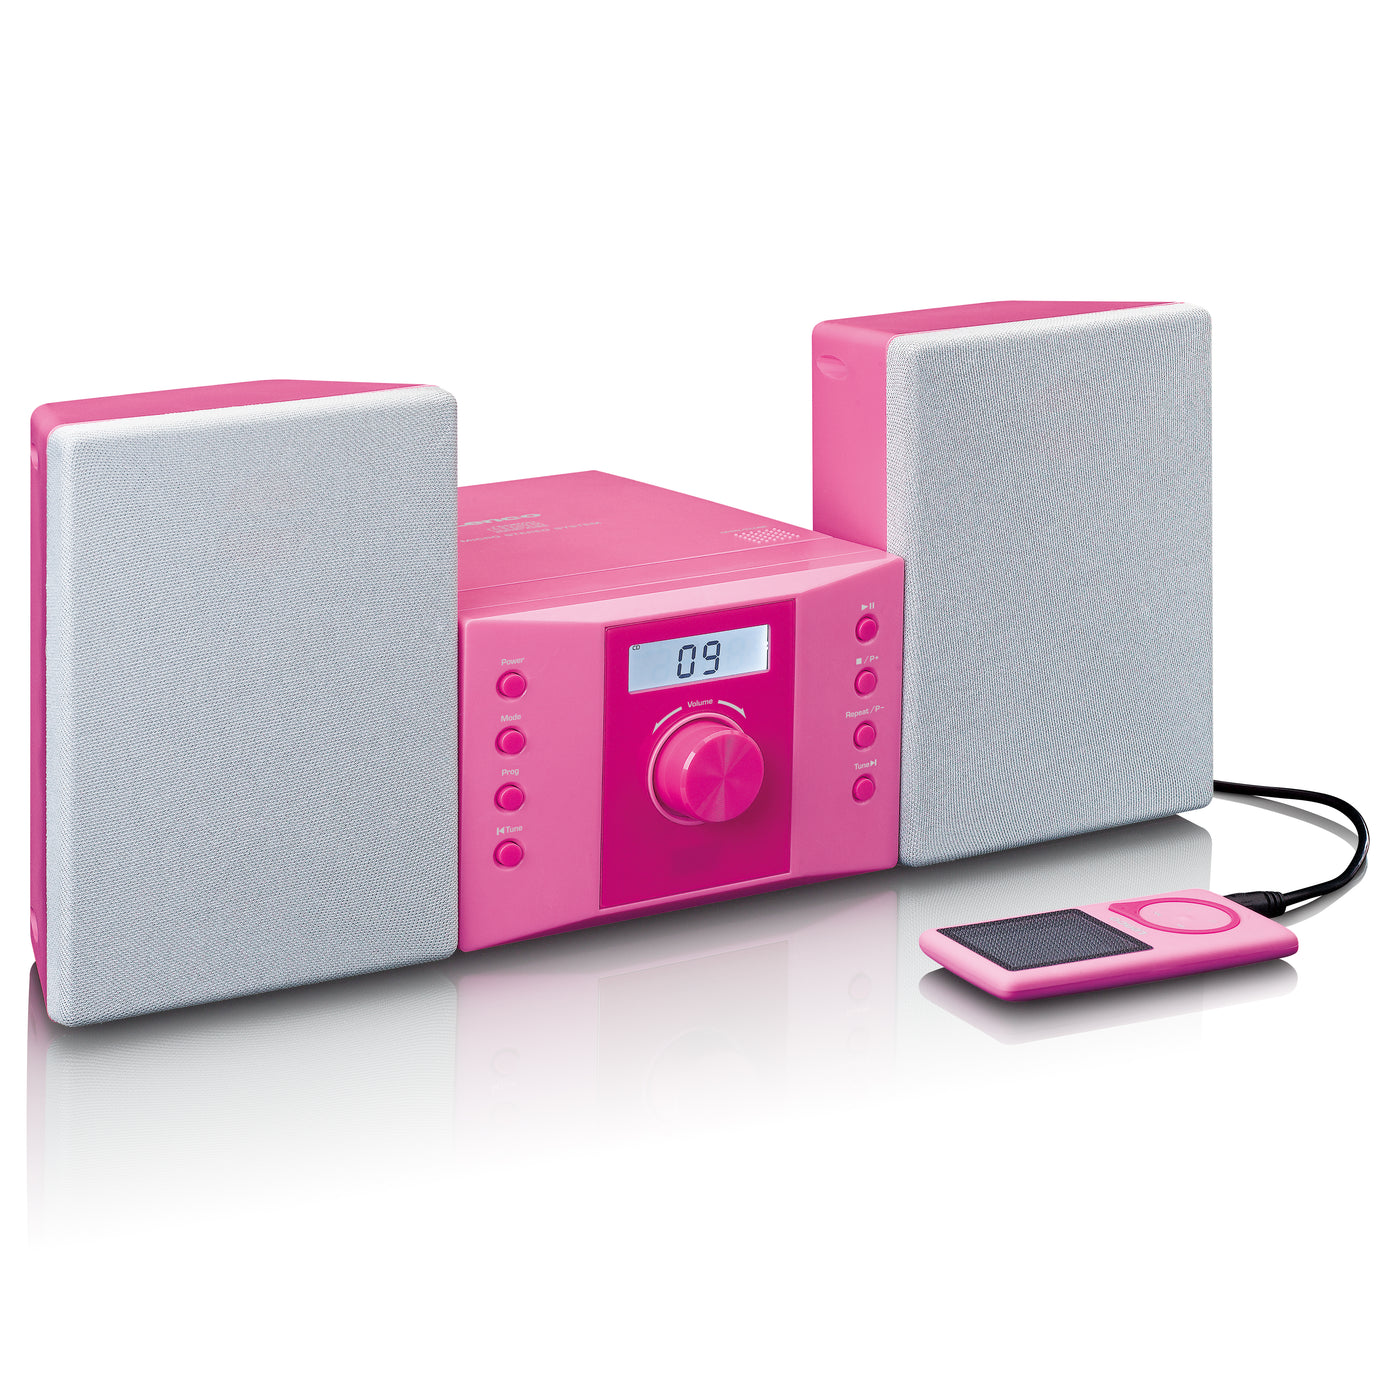 LENCO MC-013PK - Stereo set met FM radio en CD speler - Roze